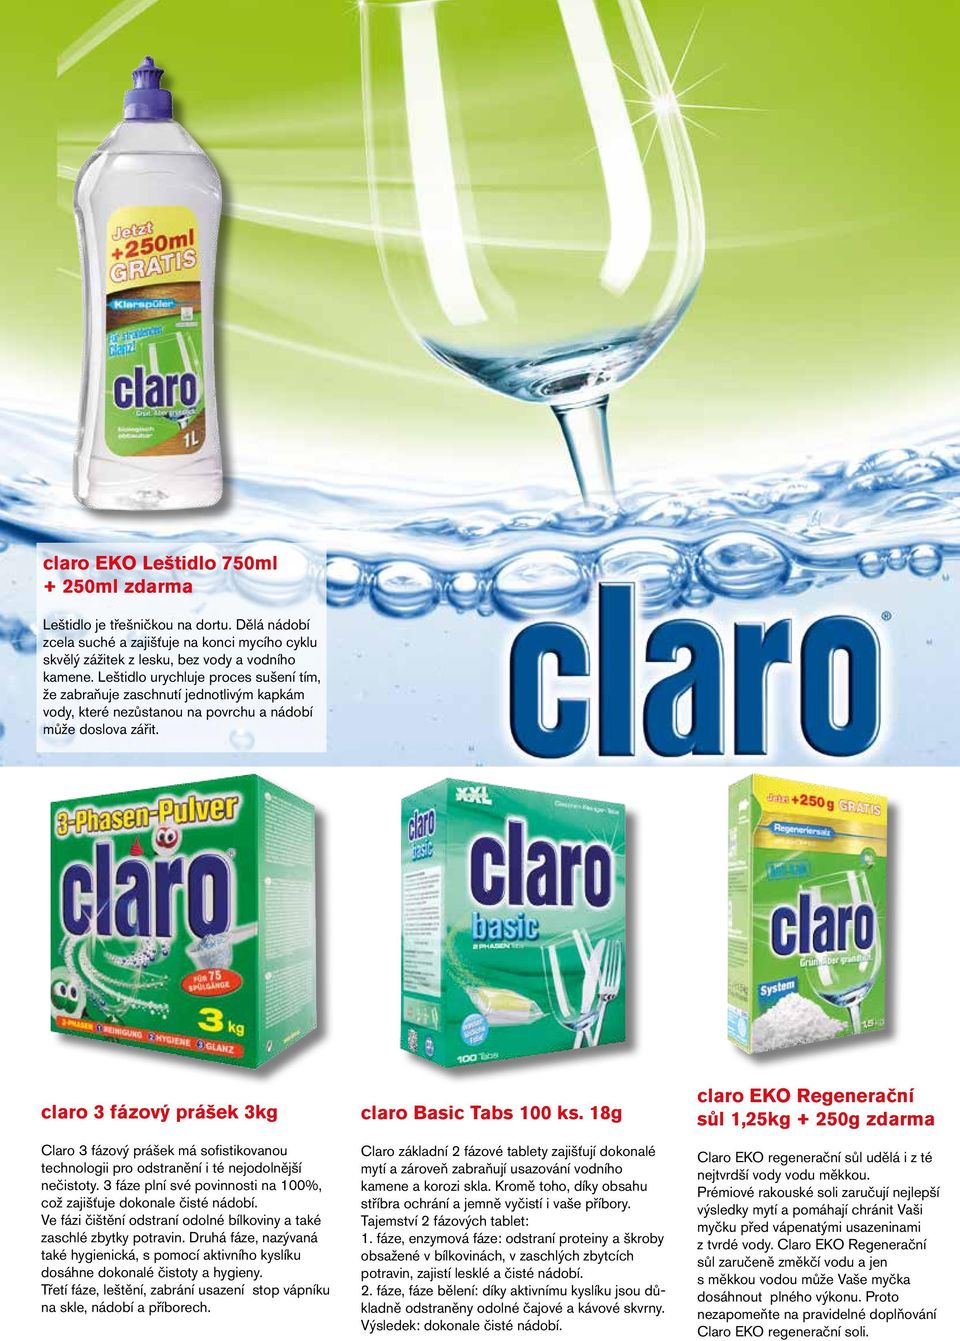 claro 3 fázový prášek 3kg Claro 3 fázový prášek má sofistikovanou technologii pro odstranění i té nejodolnější nečistoty. 3 fáze plní své povinnosti na 100%, což zajišťuje dokonale čisté nádobí.